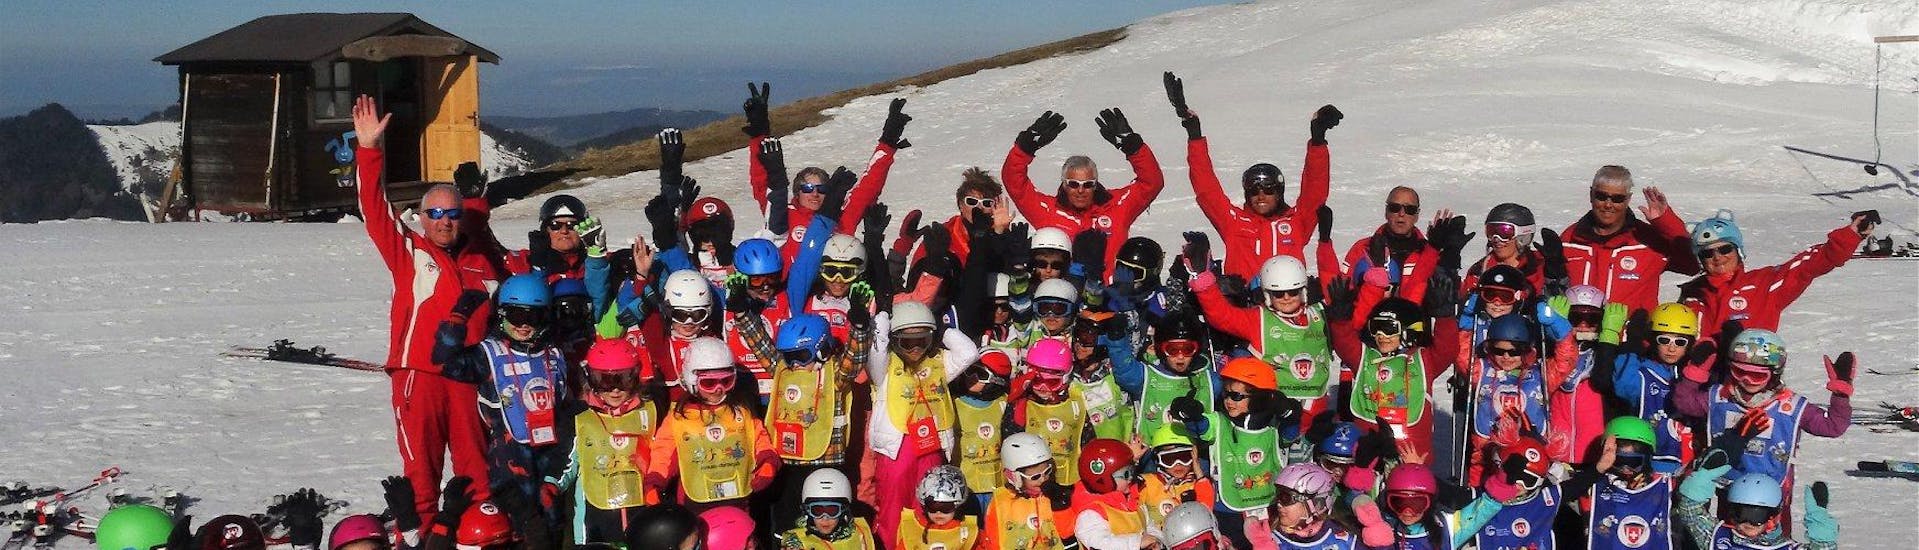 Skilessen voor kinderen vanaf 6 jaar - ervaren.